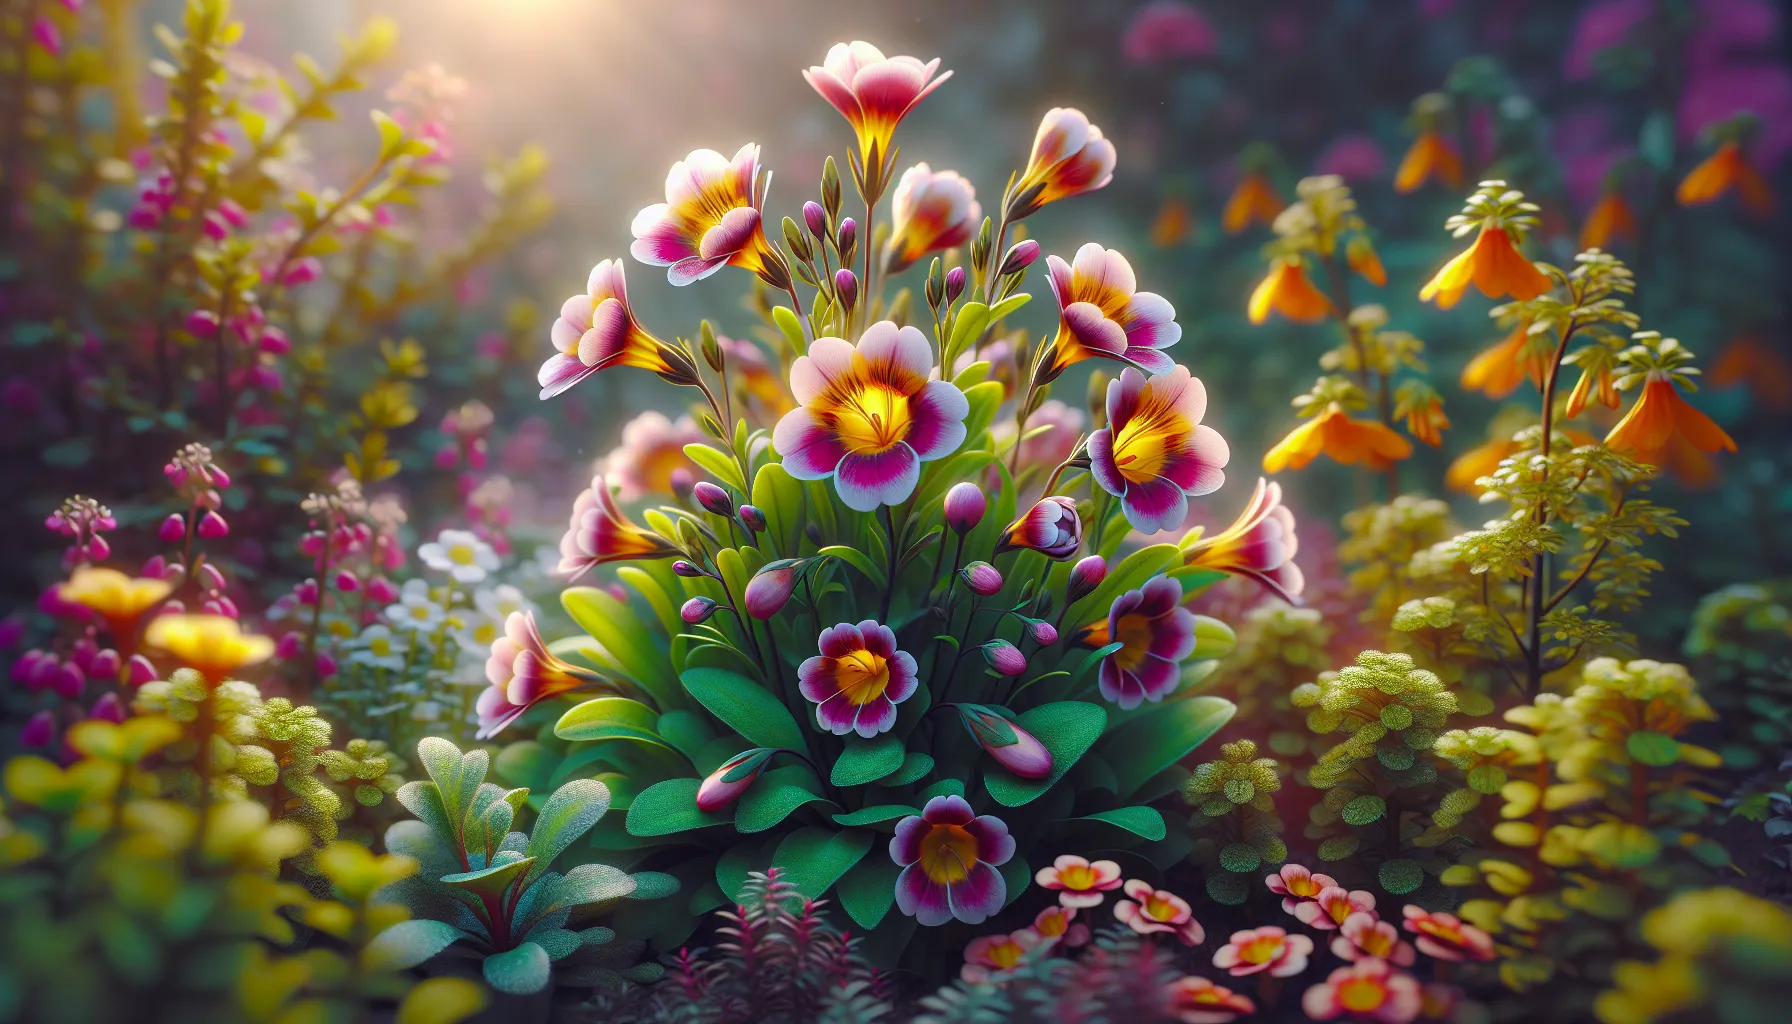 Imagen de una hermosa planta de nemesia floreciendo en un jardín, mostrando sus vibrantes colores y delicadas flores, acompañada de brotes verdes saludables y exuberantes hojas. Una representación visual de la belleza y cuidado de la planta nemesia, la joya del Cabo.